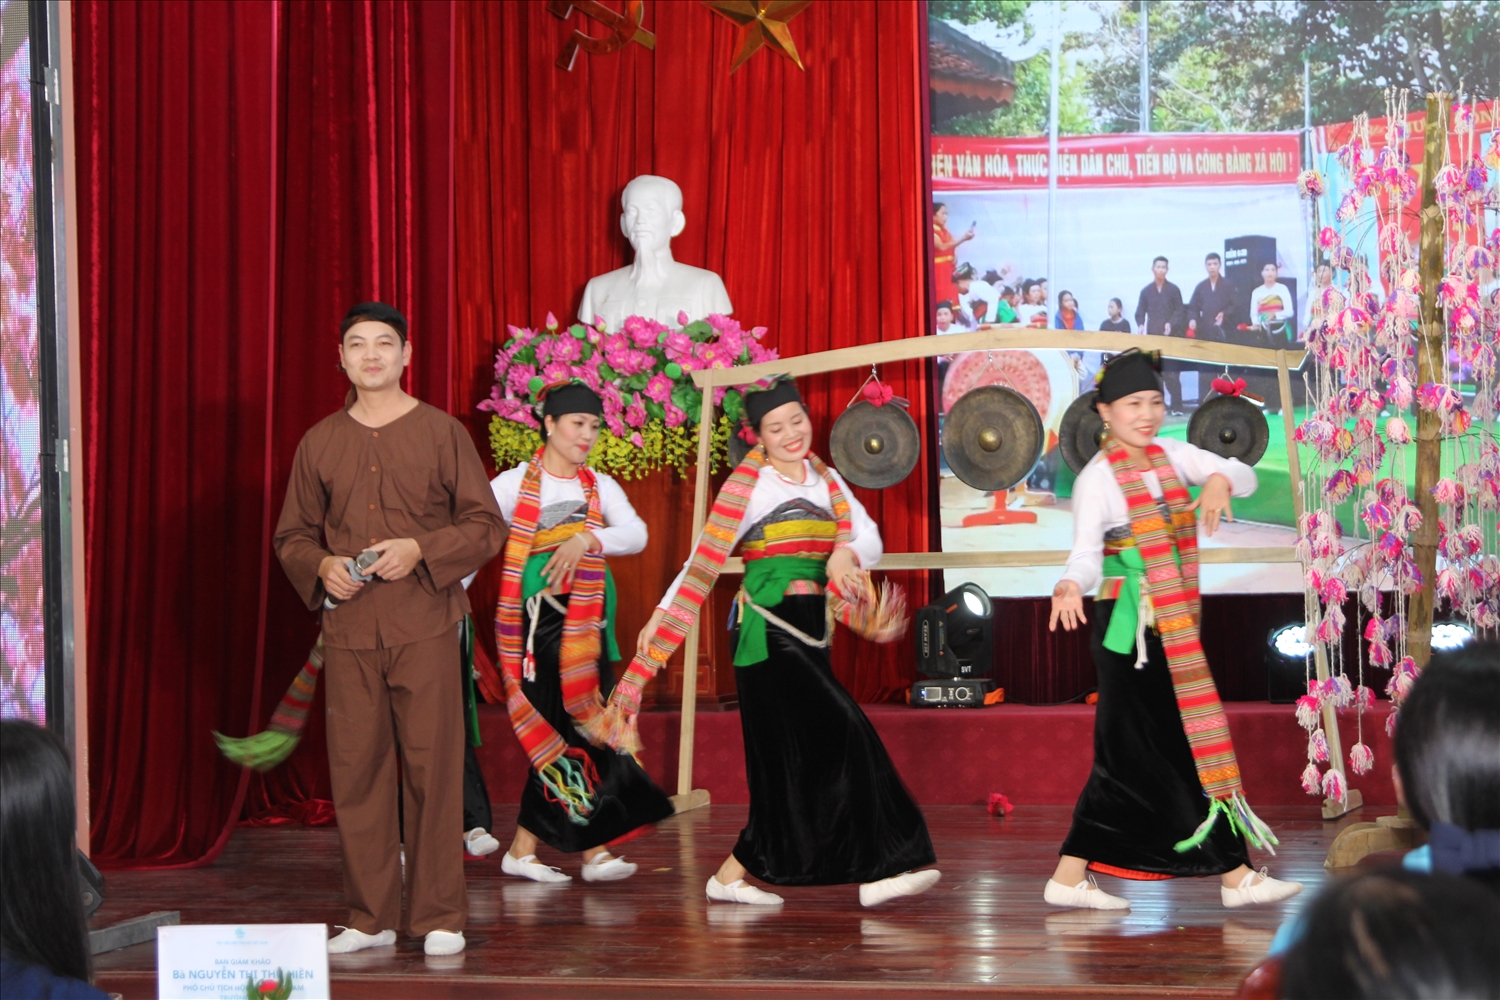 Phần dự thi trang phụ dân tộc Mường của Hội phụ nữ tỉnh Thanh Hóa